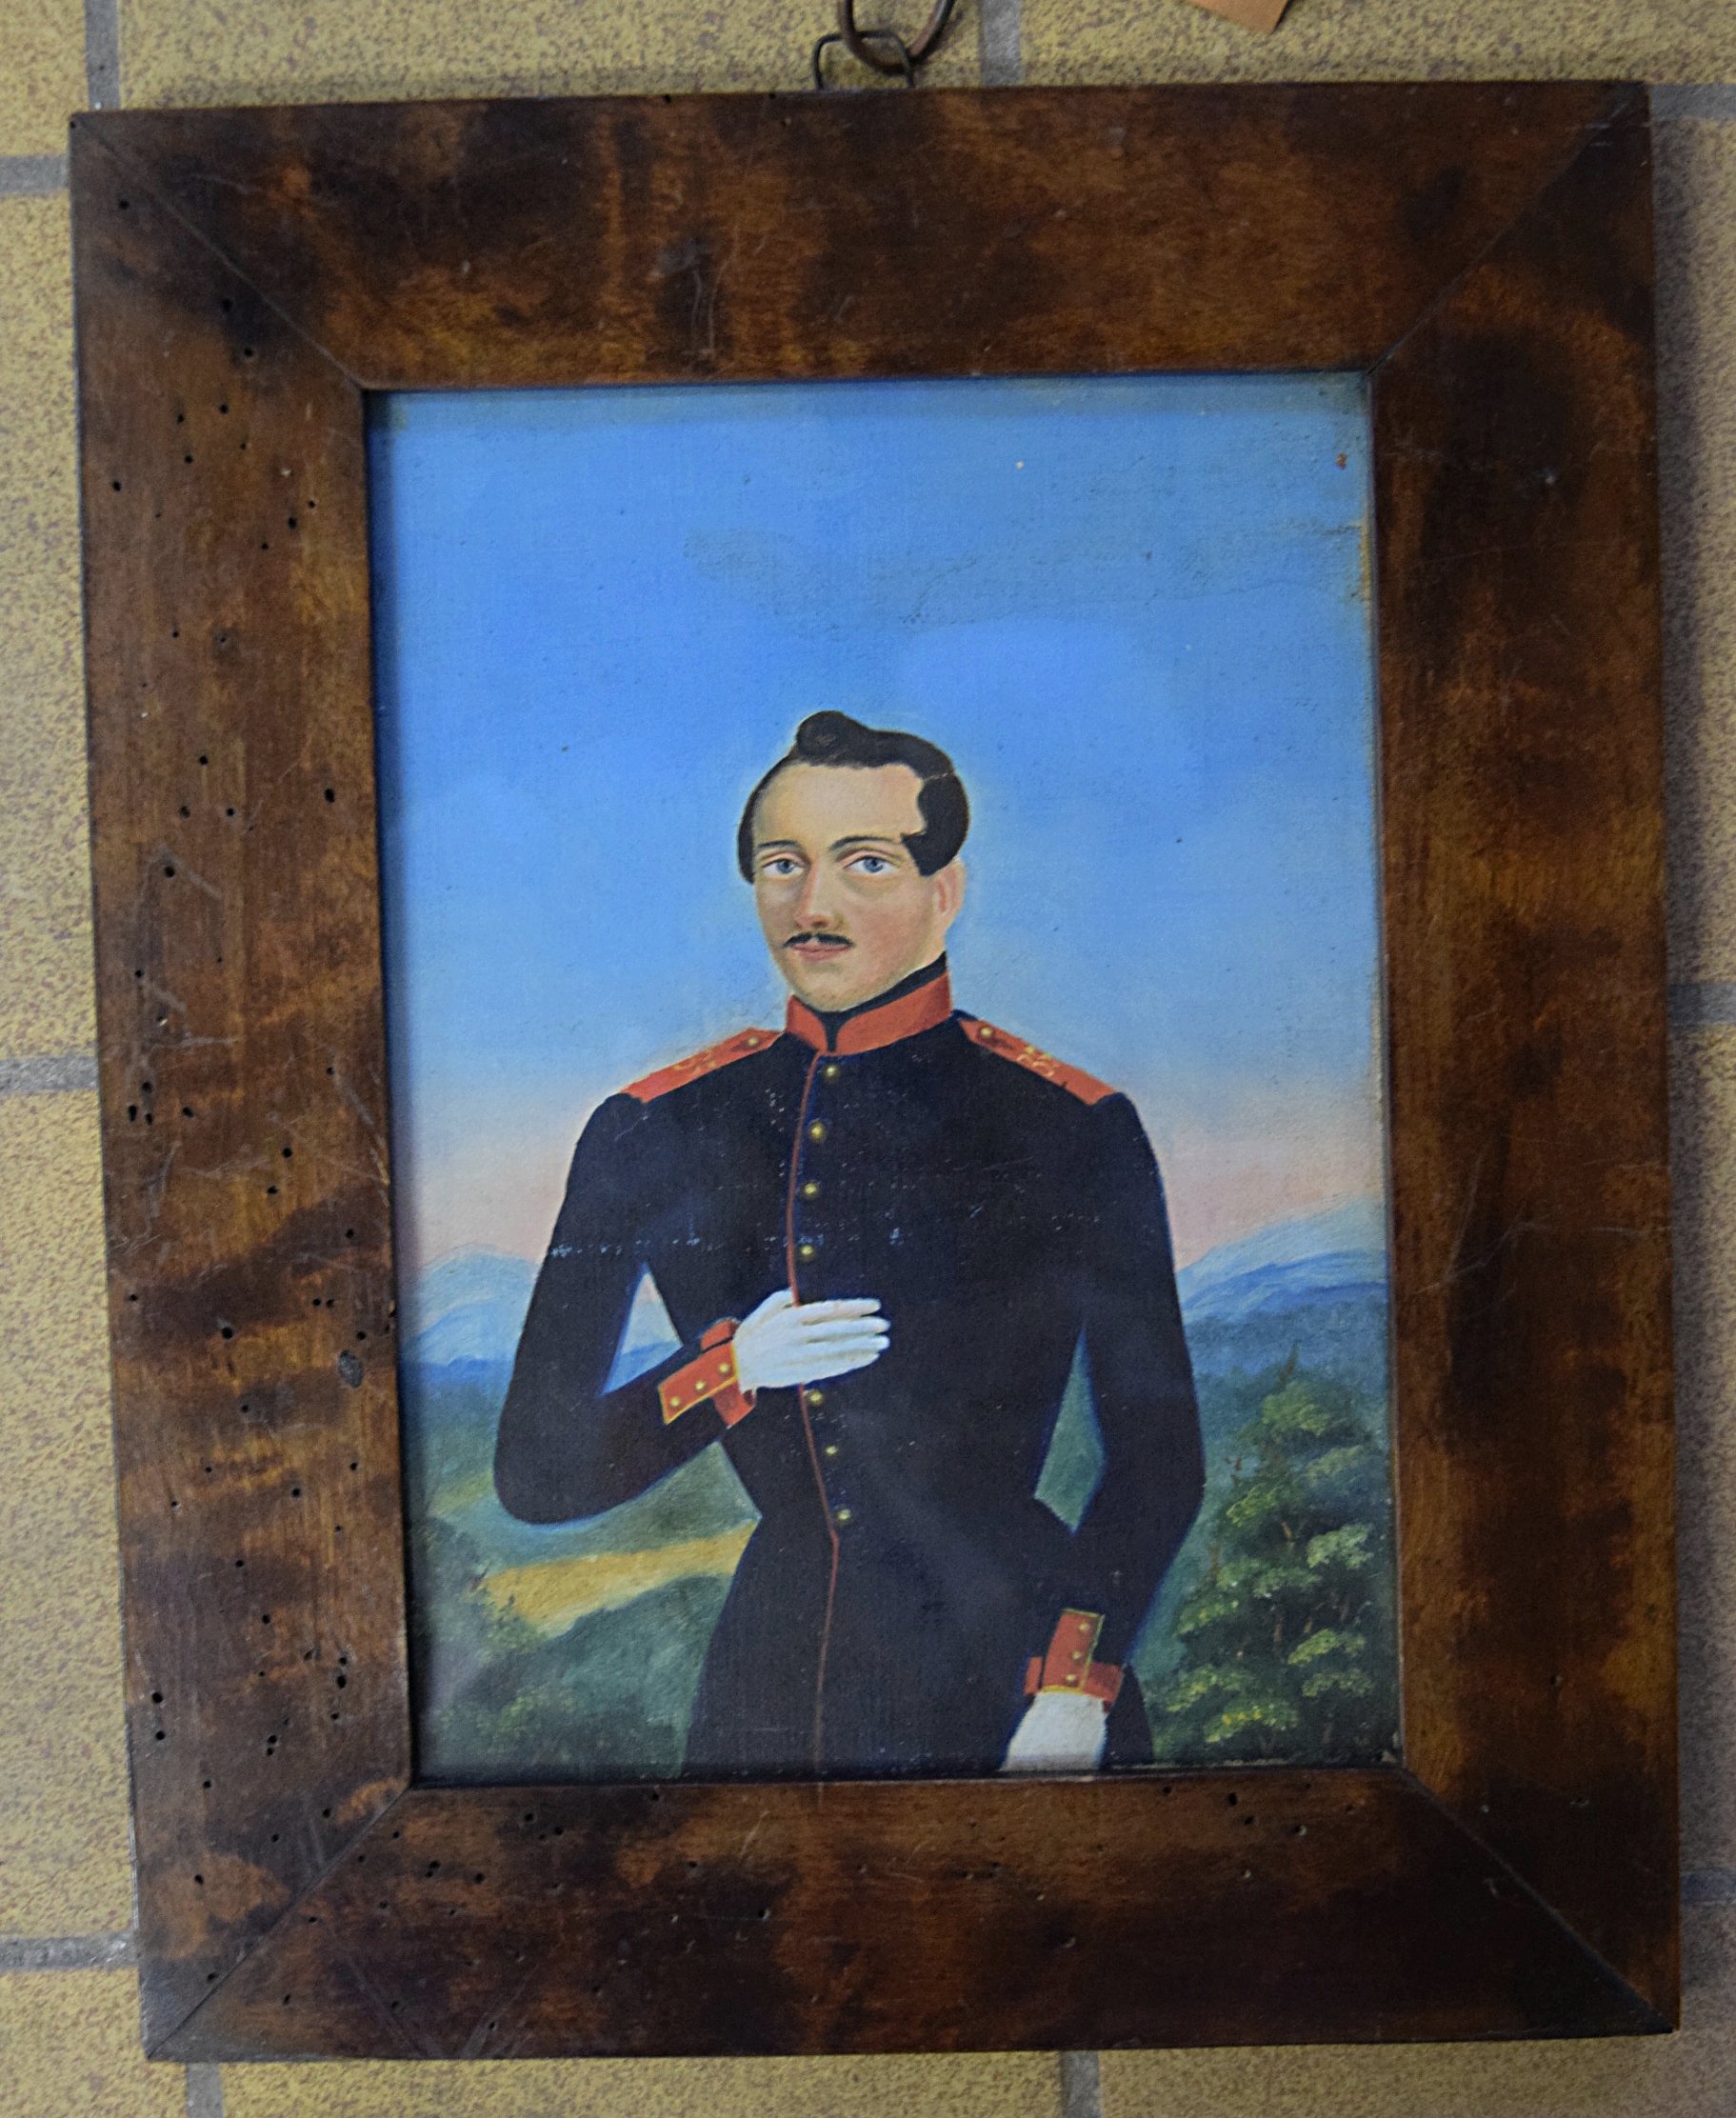 Soldat Inf. Rgt. 35 aus dem Jahre 1846? (Grenadier?) (Museum Eberswalde CC BY-NC-ND)